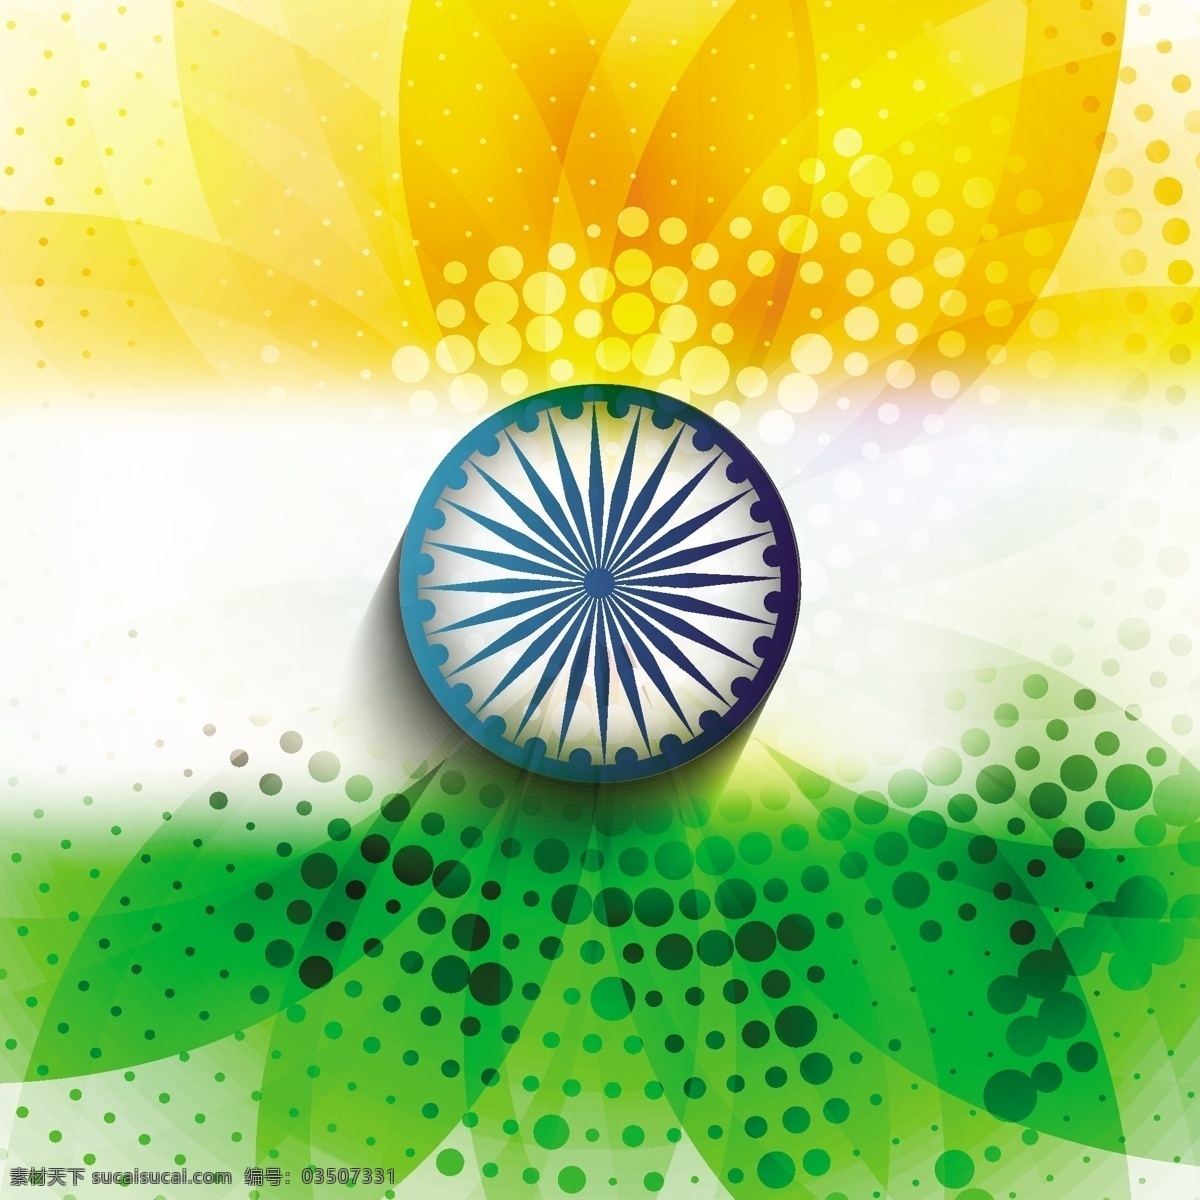 印度 国旗 色调 背景 模式 抽象 旗 节 假日 轮 和平 印度国旗 半色调 独立日 国家 自由 天 政府 下 爱国主义 绿色